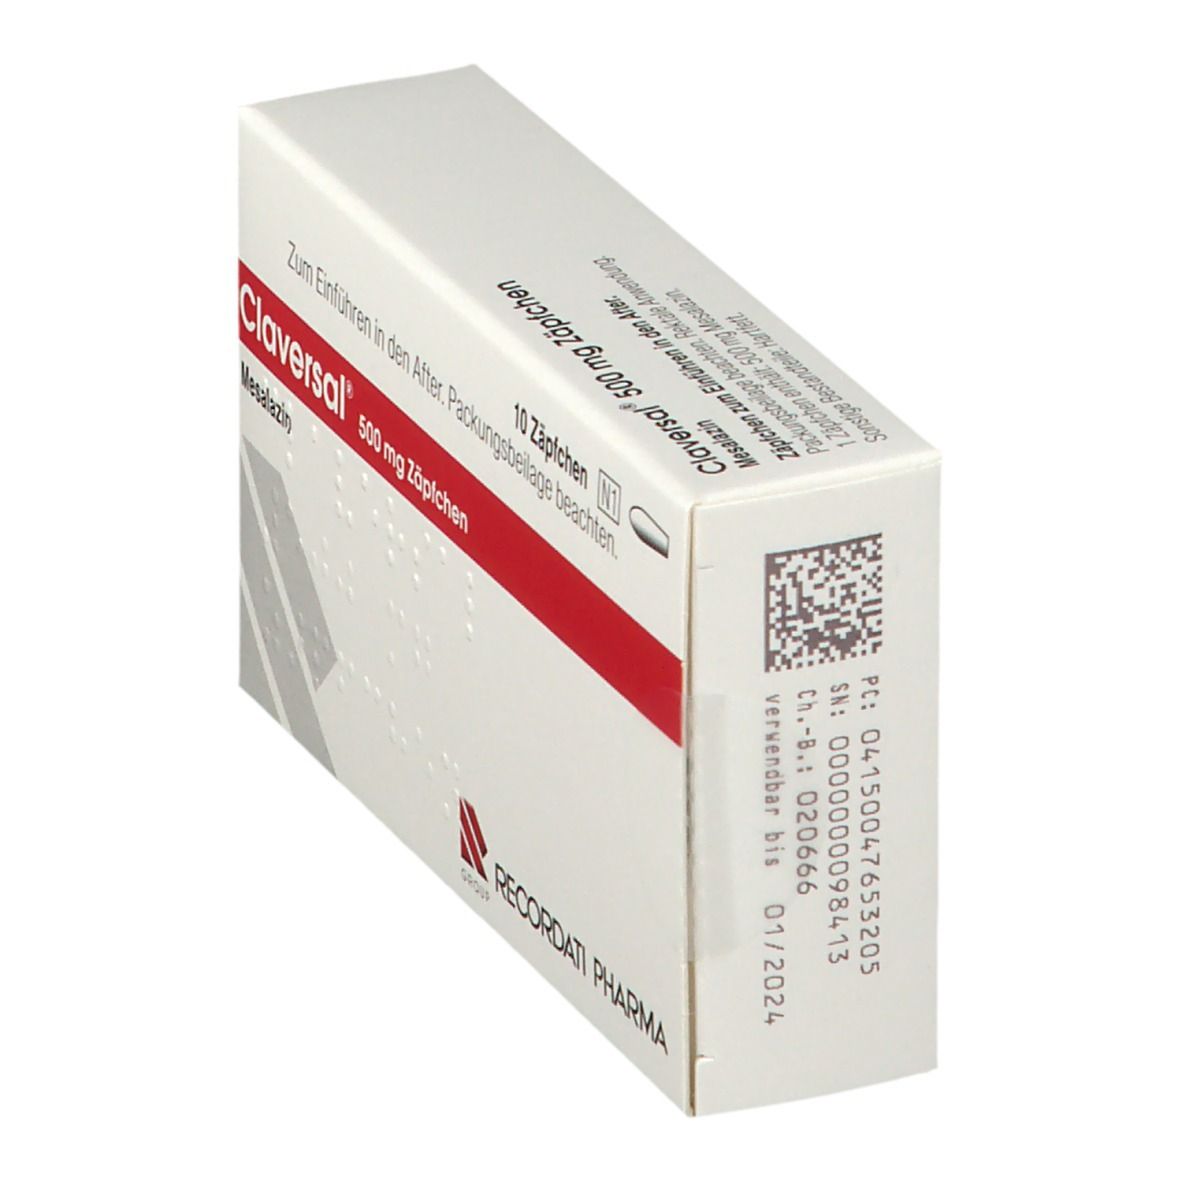 Claversal® 500 mg Zäpfchen